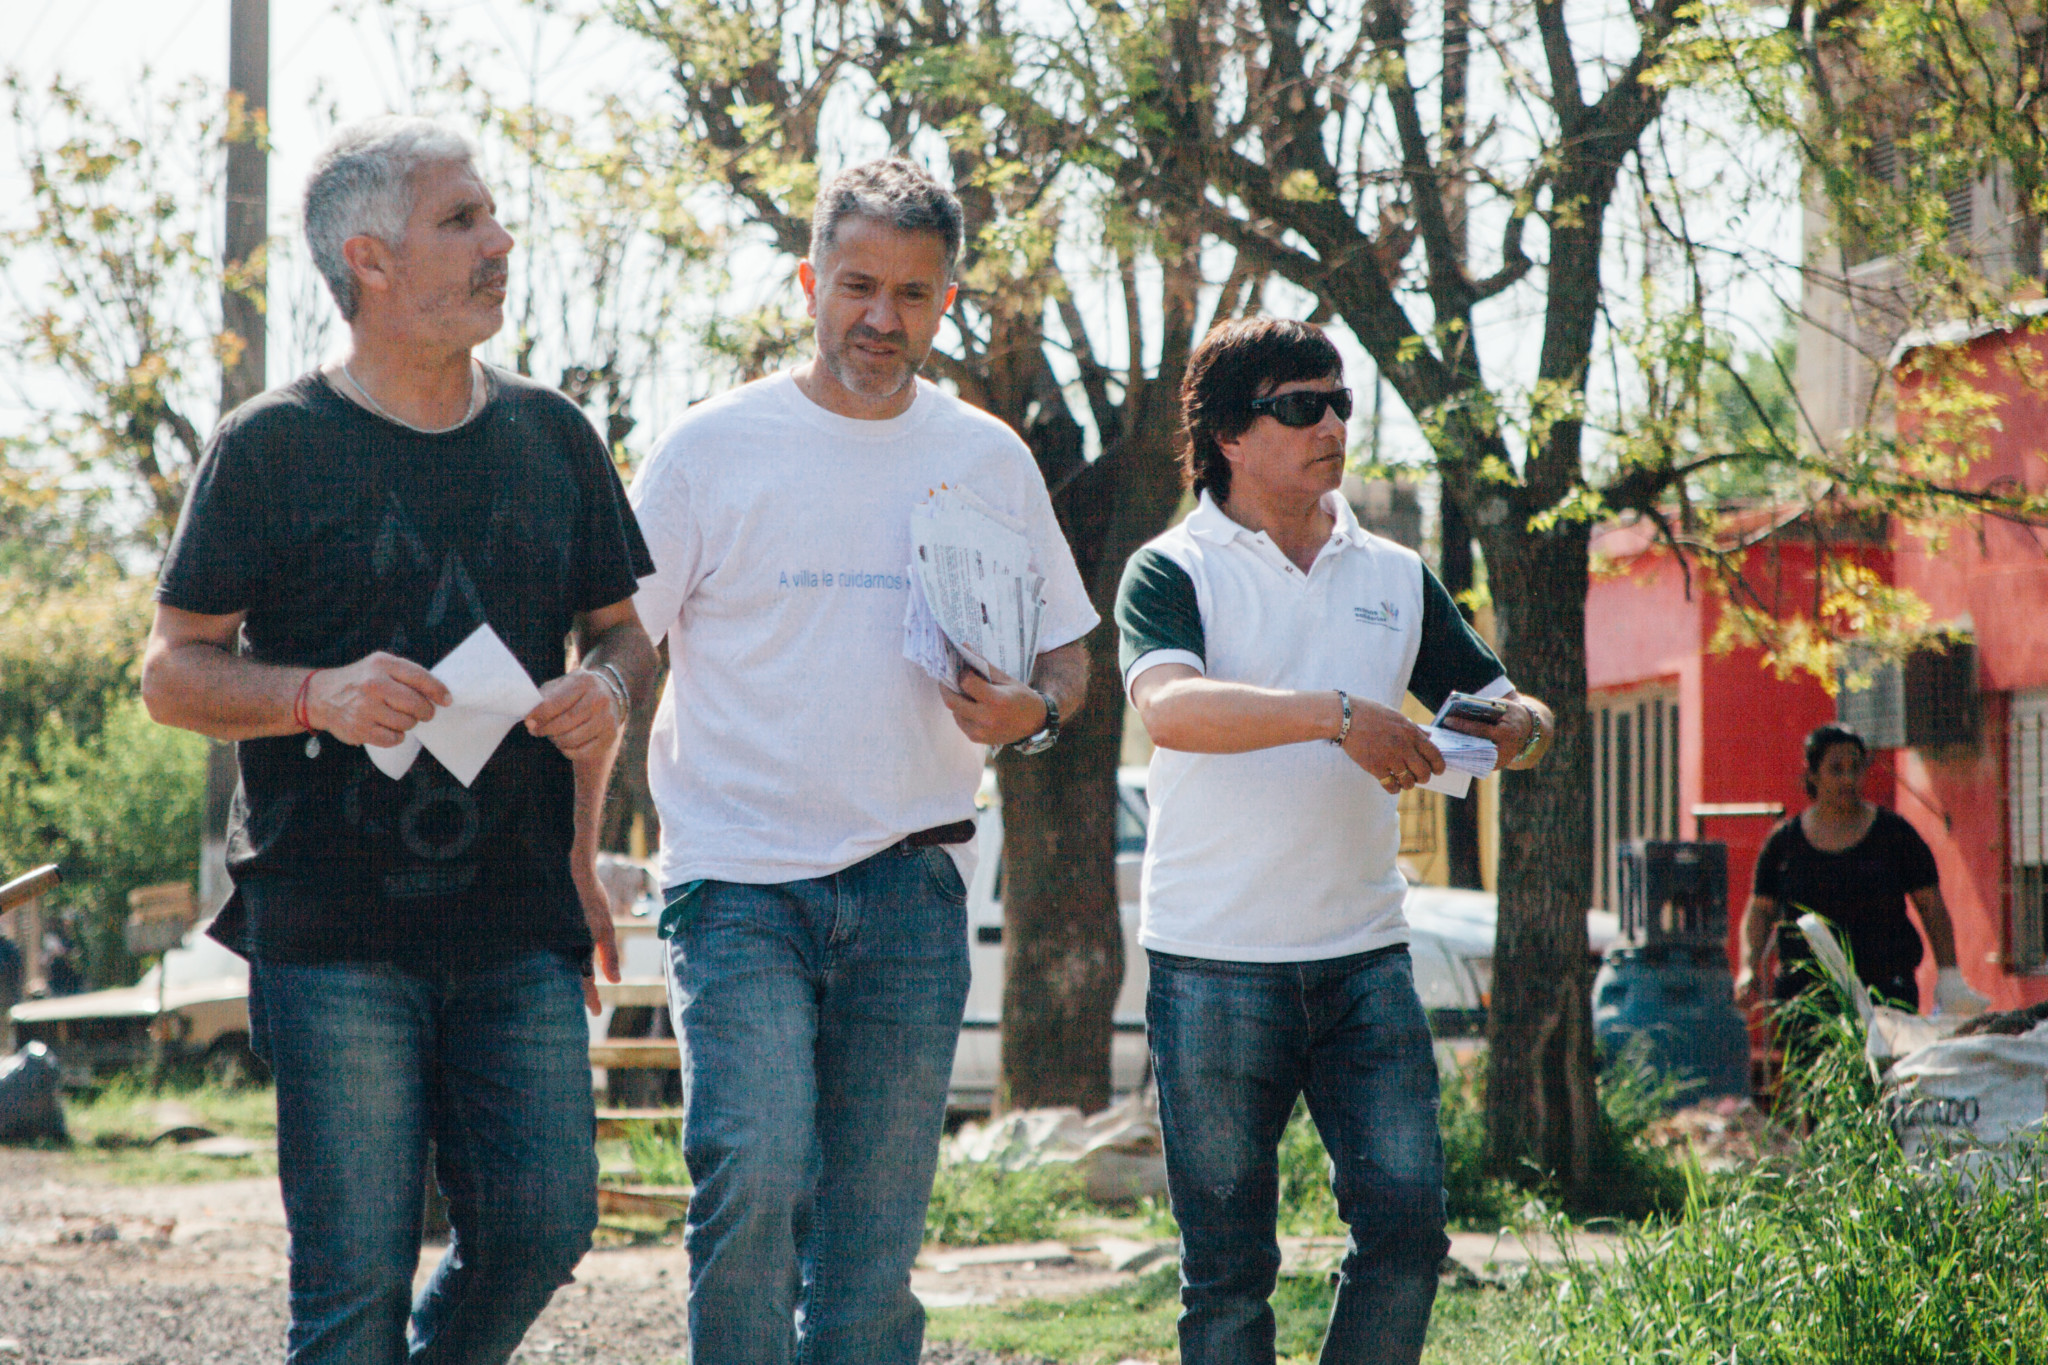 Berti encabezó la campaña “Mi Barrio Limpio” en barrio Luzuriaga